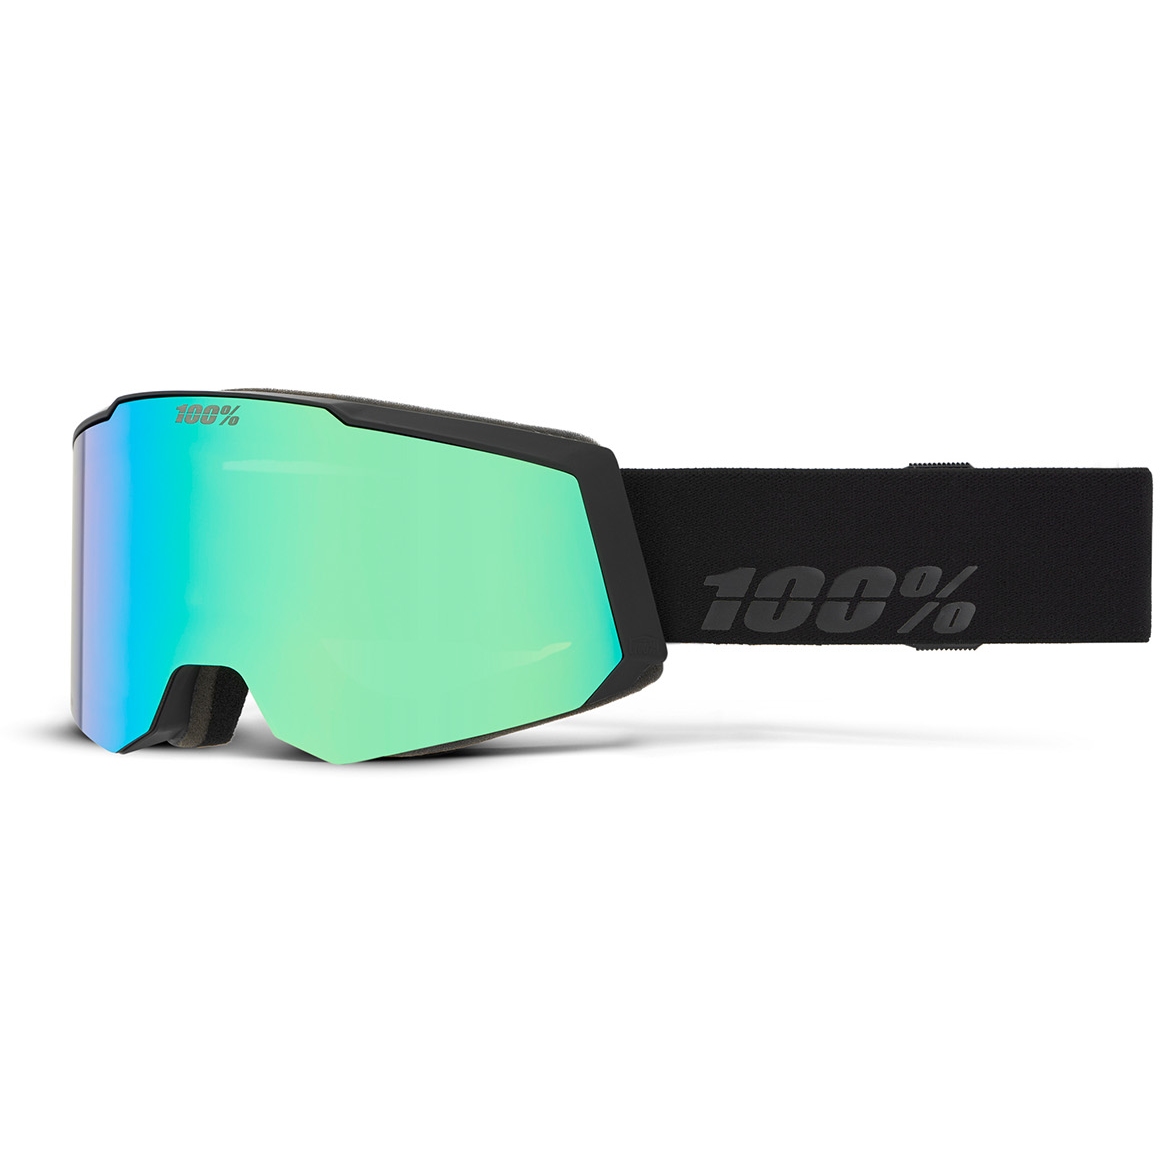 Bild von 100% Snowcraft S Ski-Brille - HiPER Mirror Lens - Black/Green / Grey-Blue-Green + Pink-Turquoise